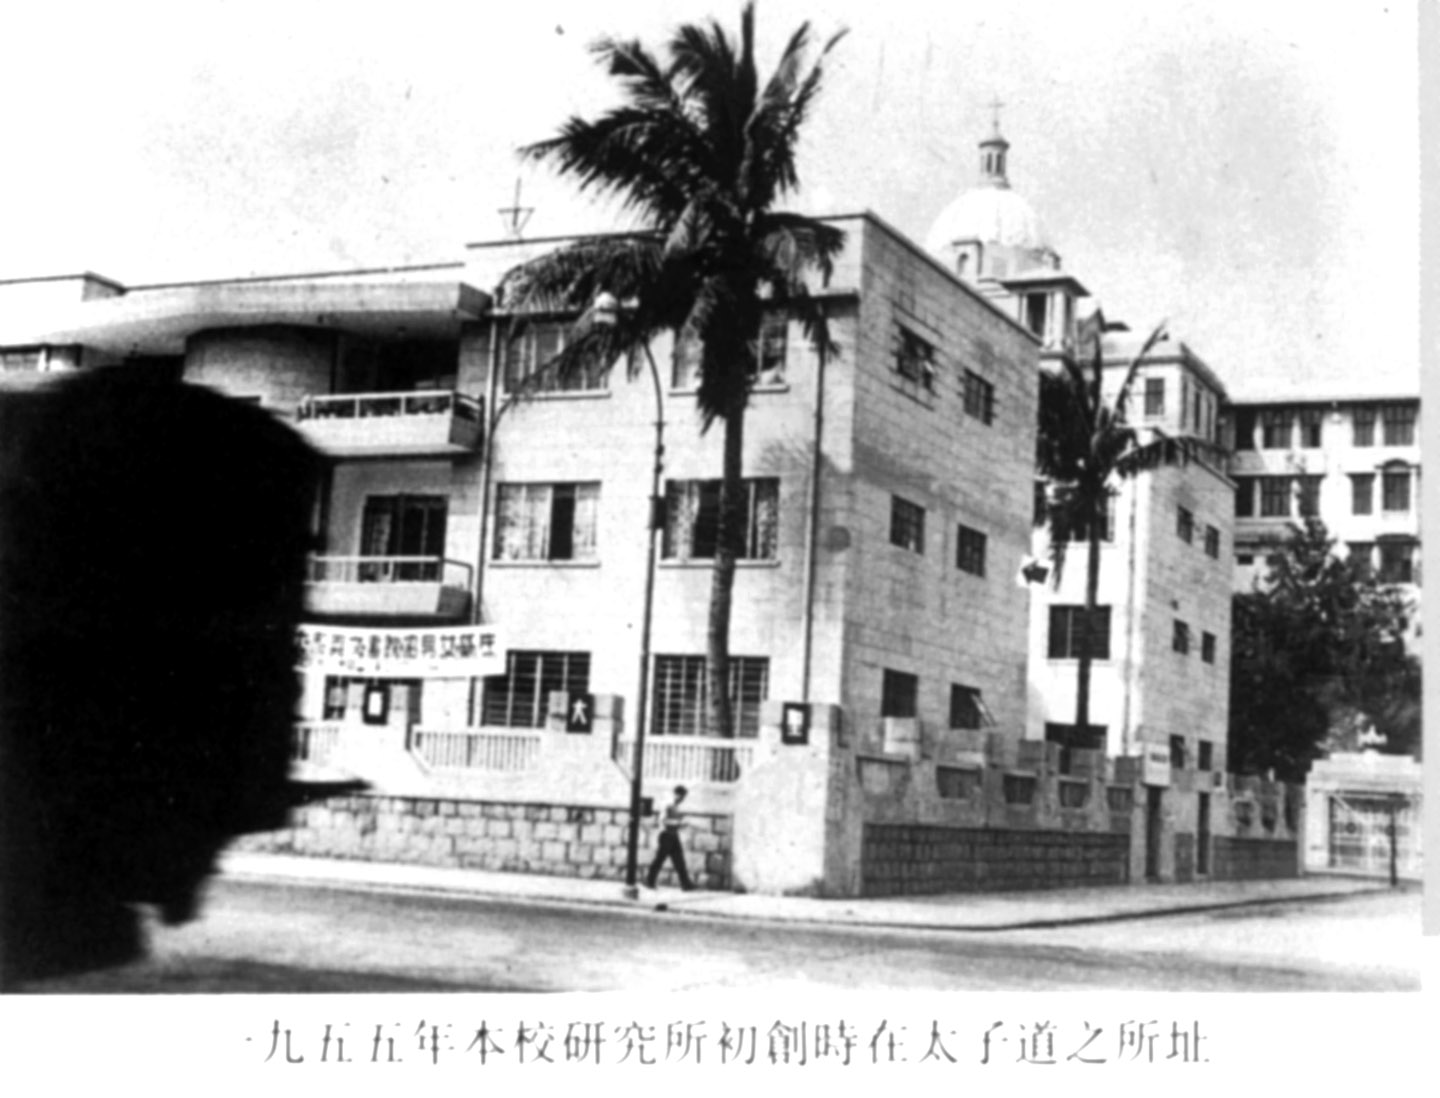 新亞研究所初創時在太子道之校舍(1955)